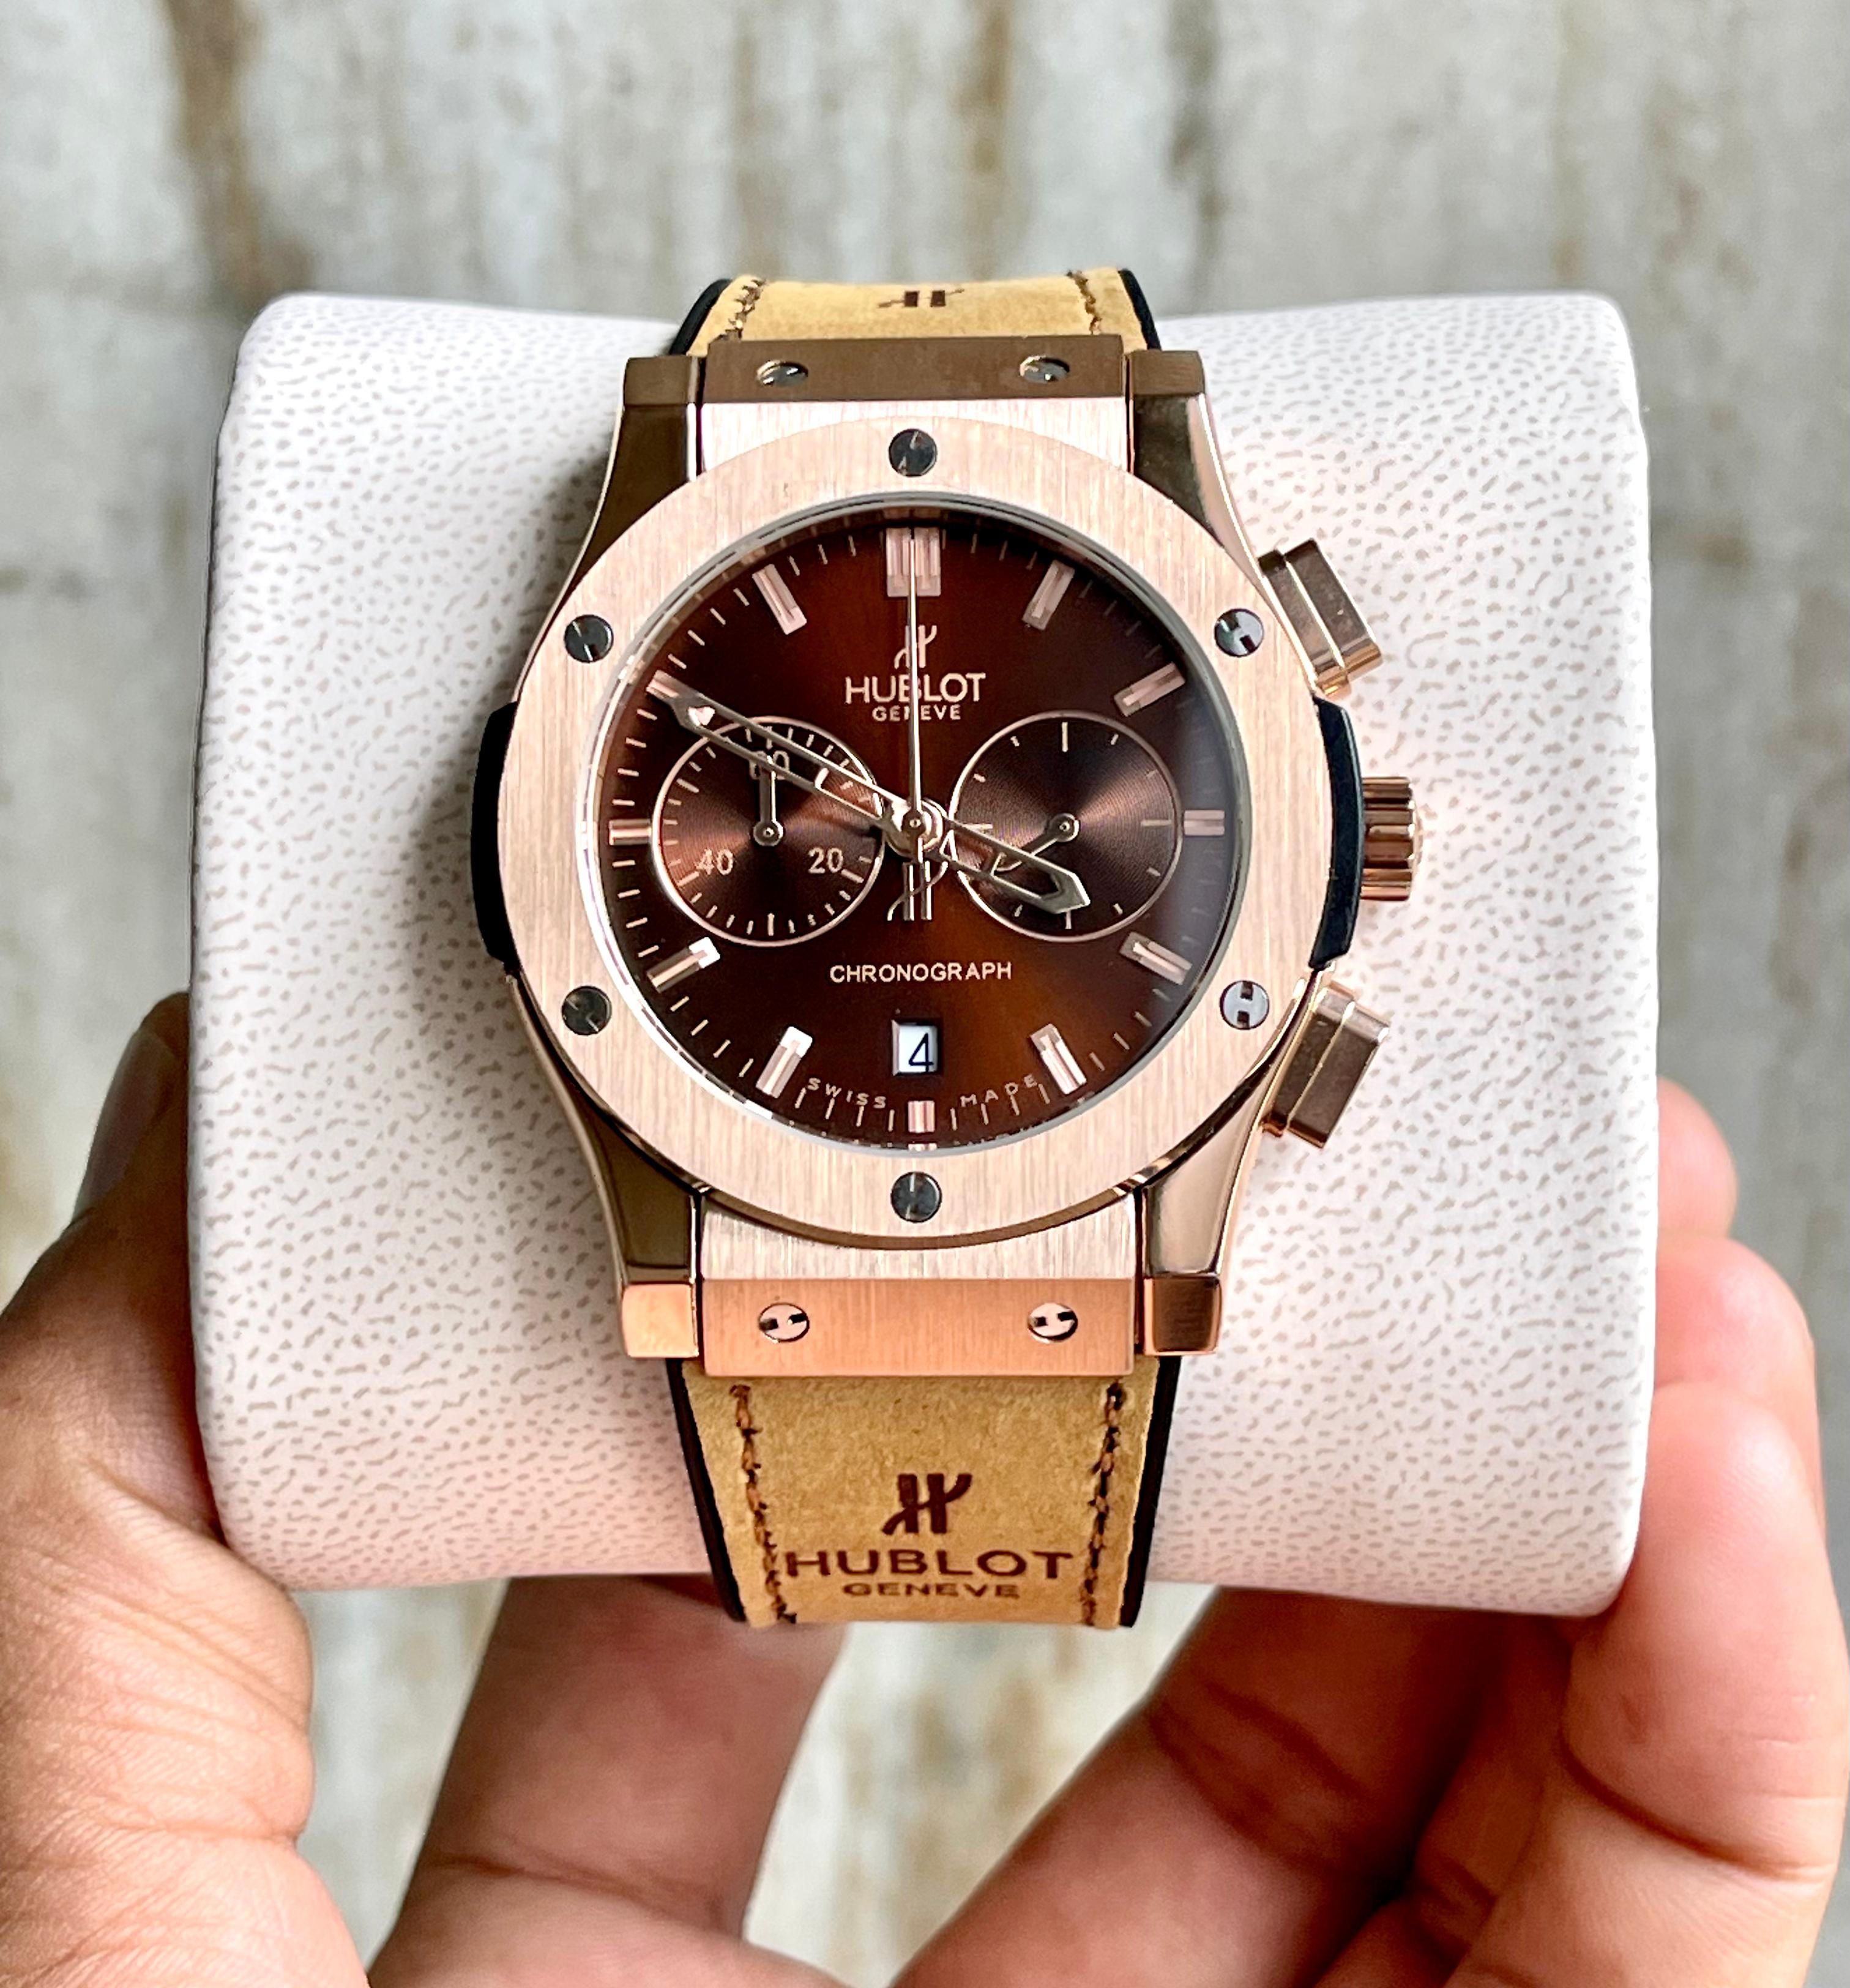 Big Bang Premium Leather Watch - AmazingBaba